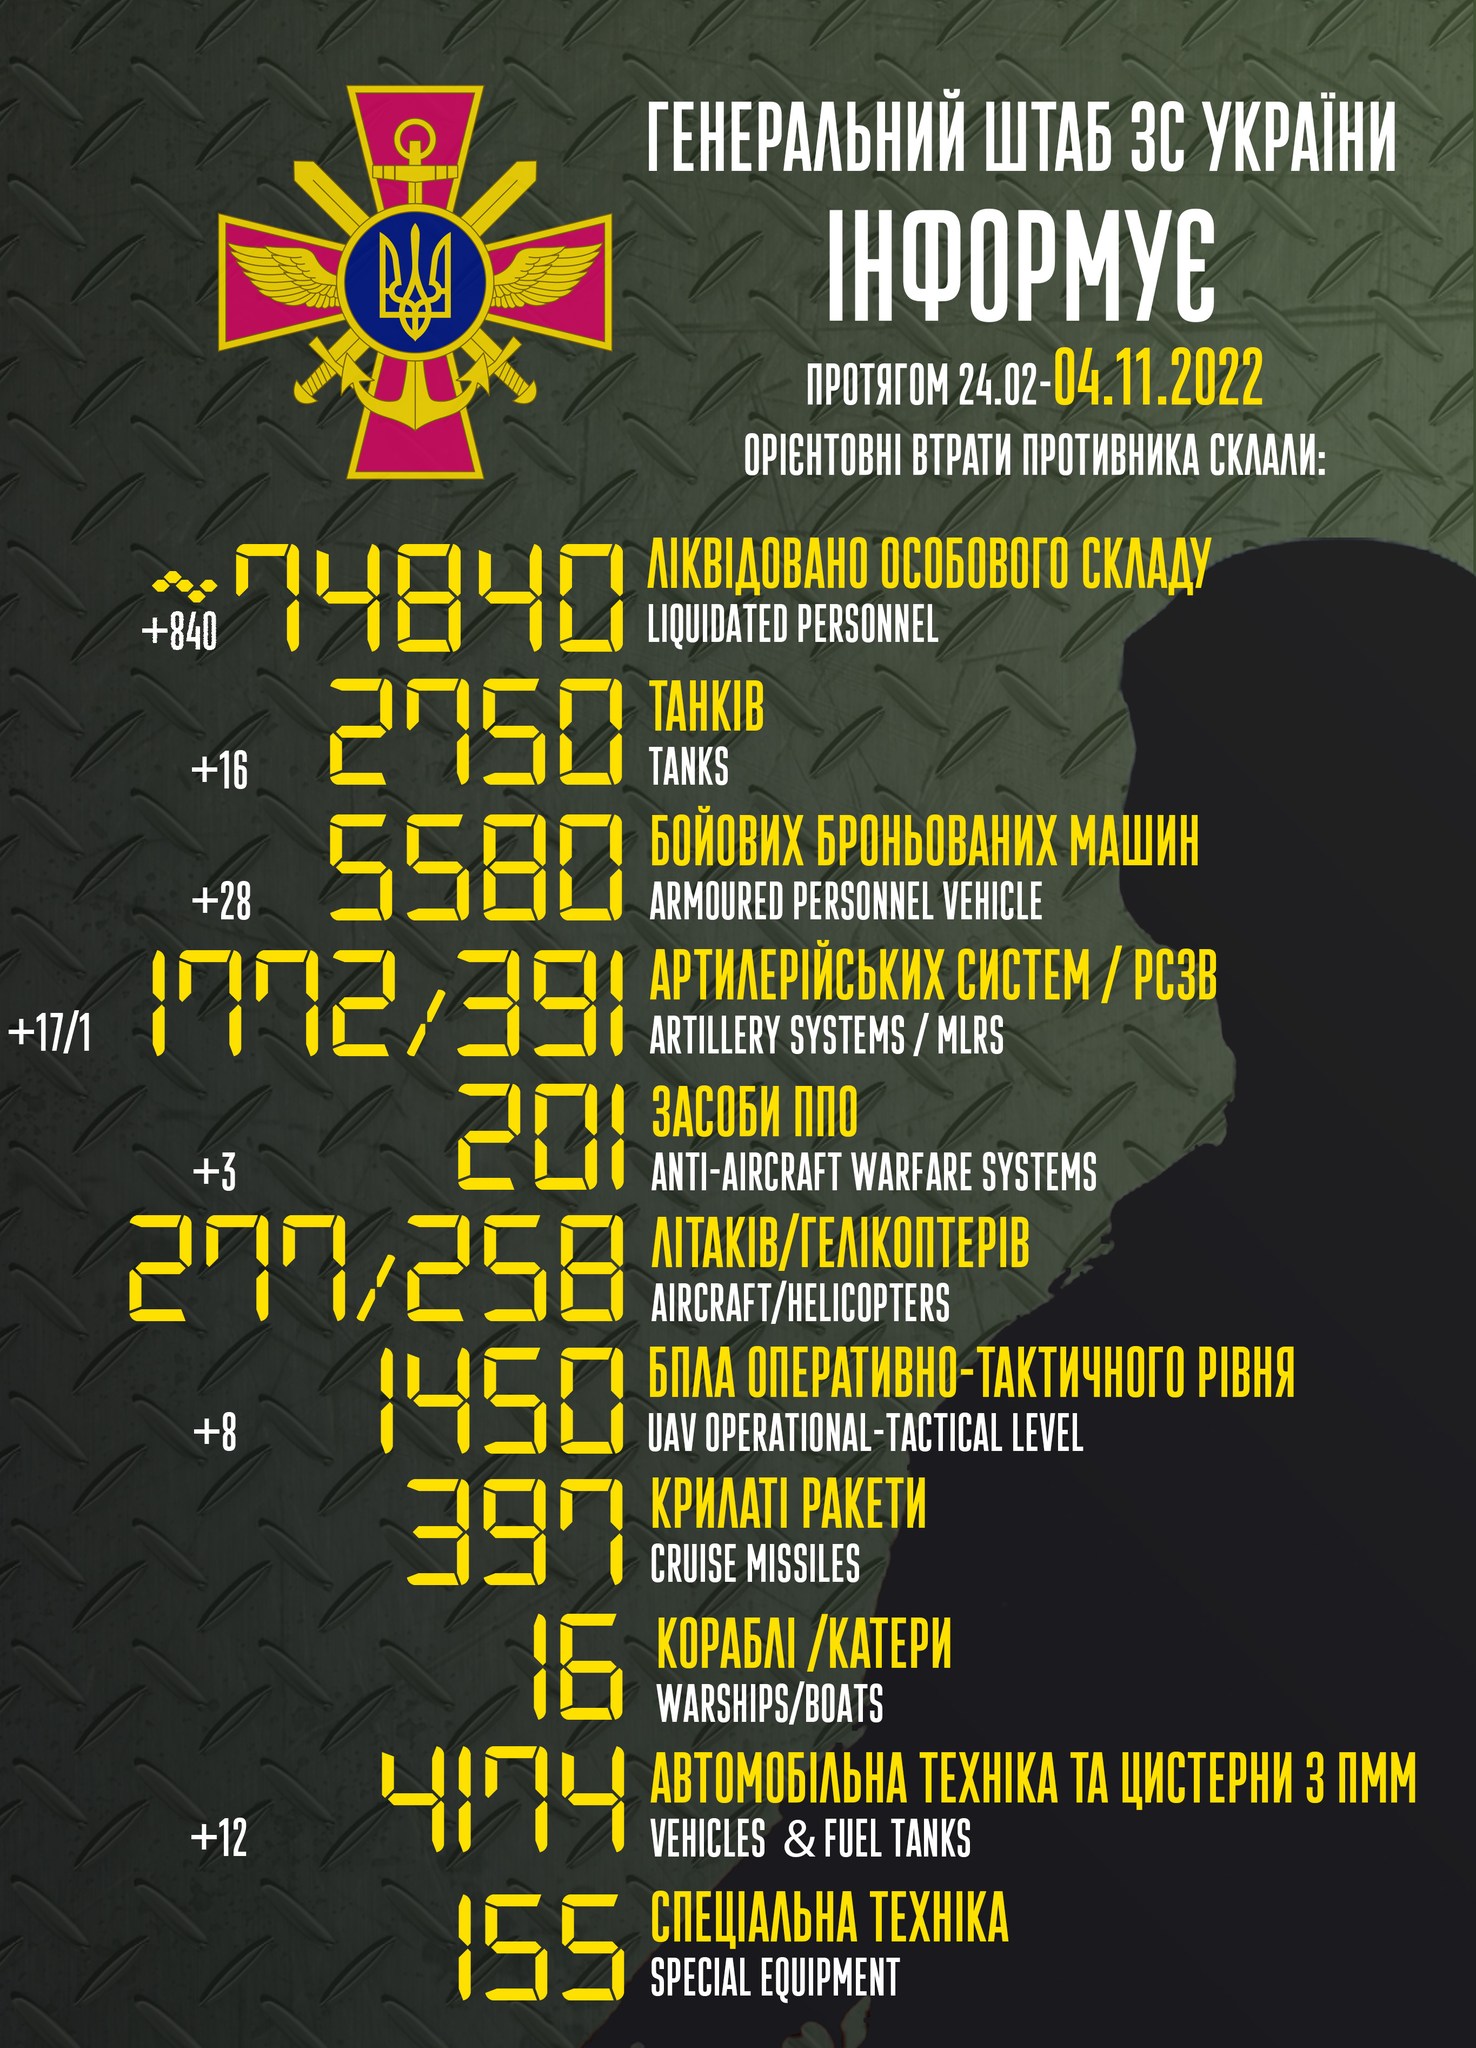 Потери России в войне. Сколько россиян погибло на войне против Украины